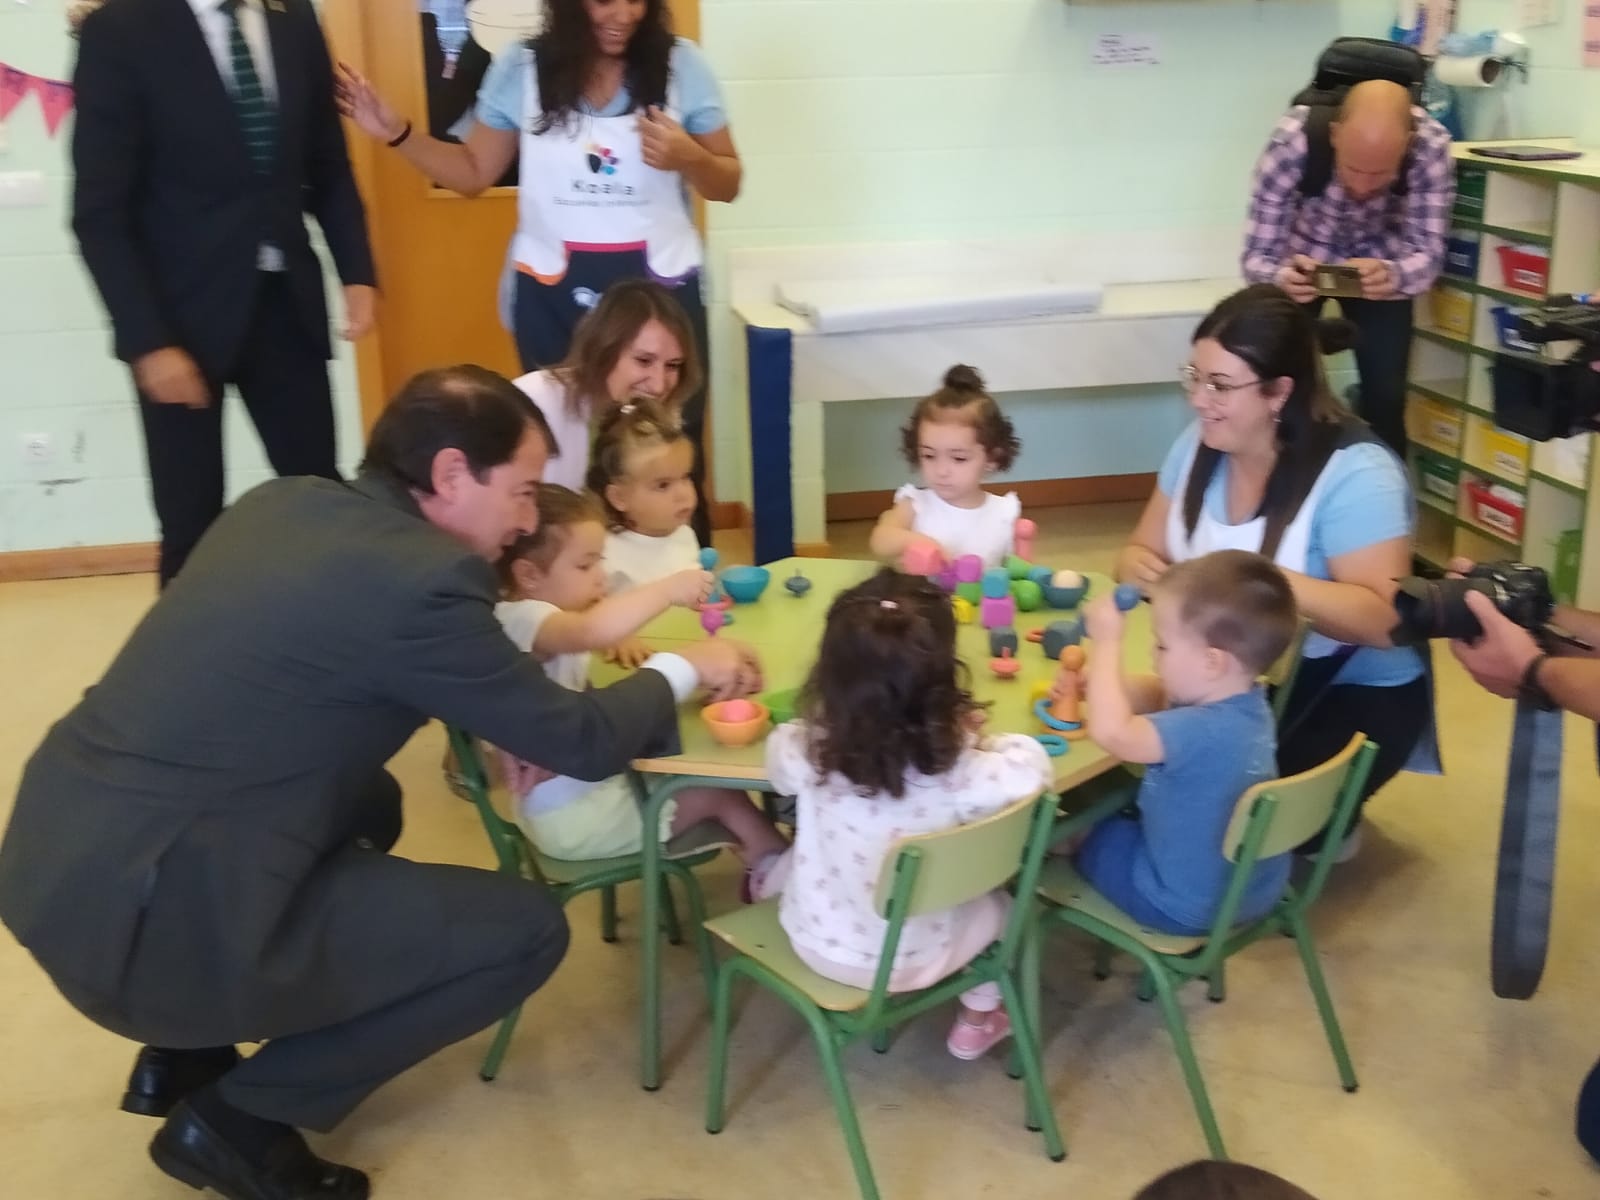 Visita de Alfonso Fernández Mañueco al centro de educación infantil de Carbajosa